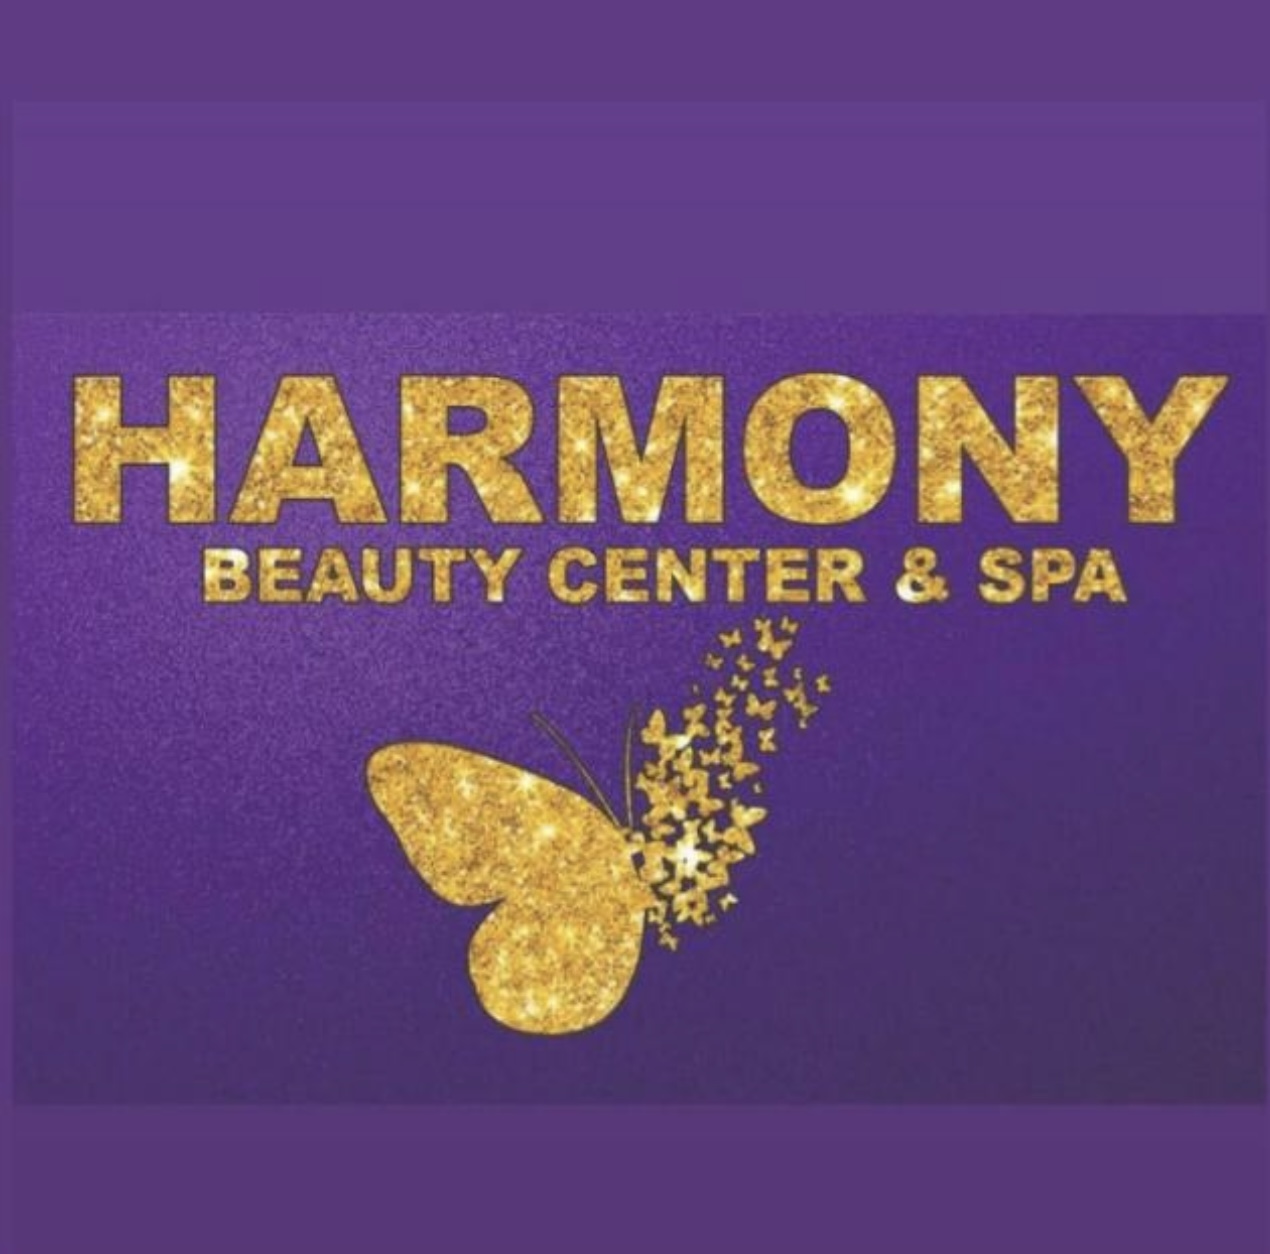 Harmony beauty center